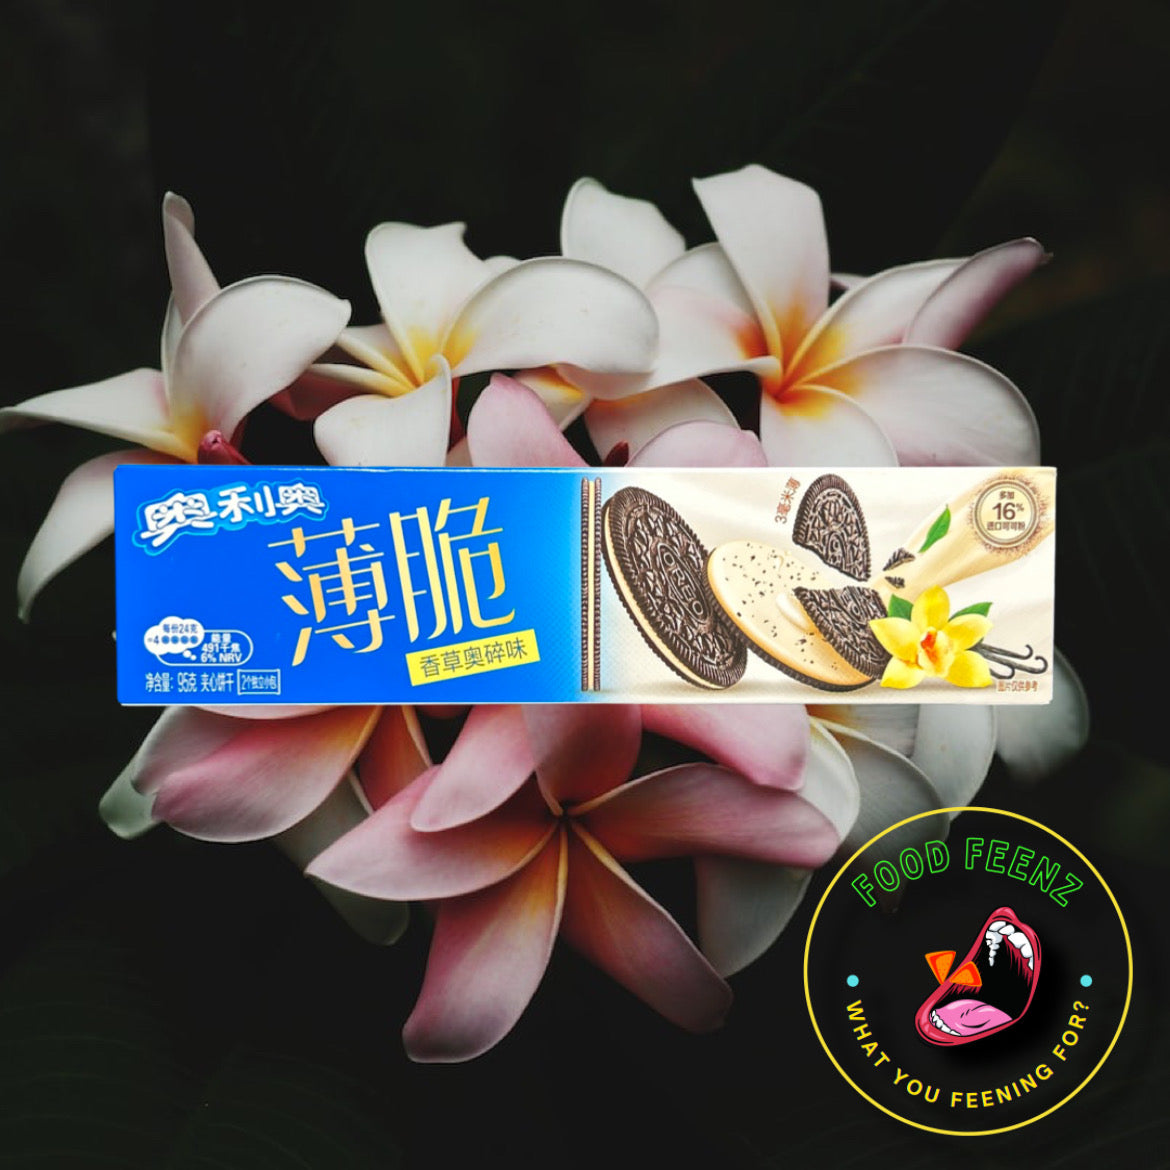 Oreo Vanilla Flavor (China)